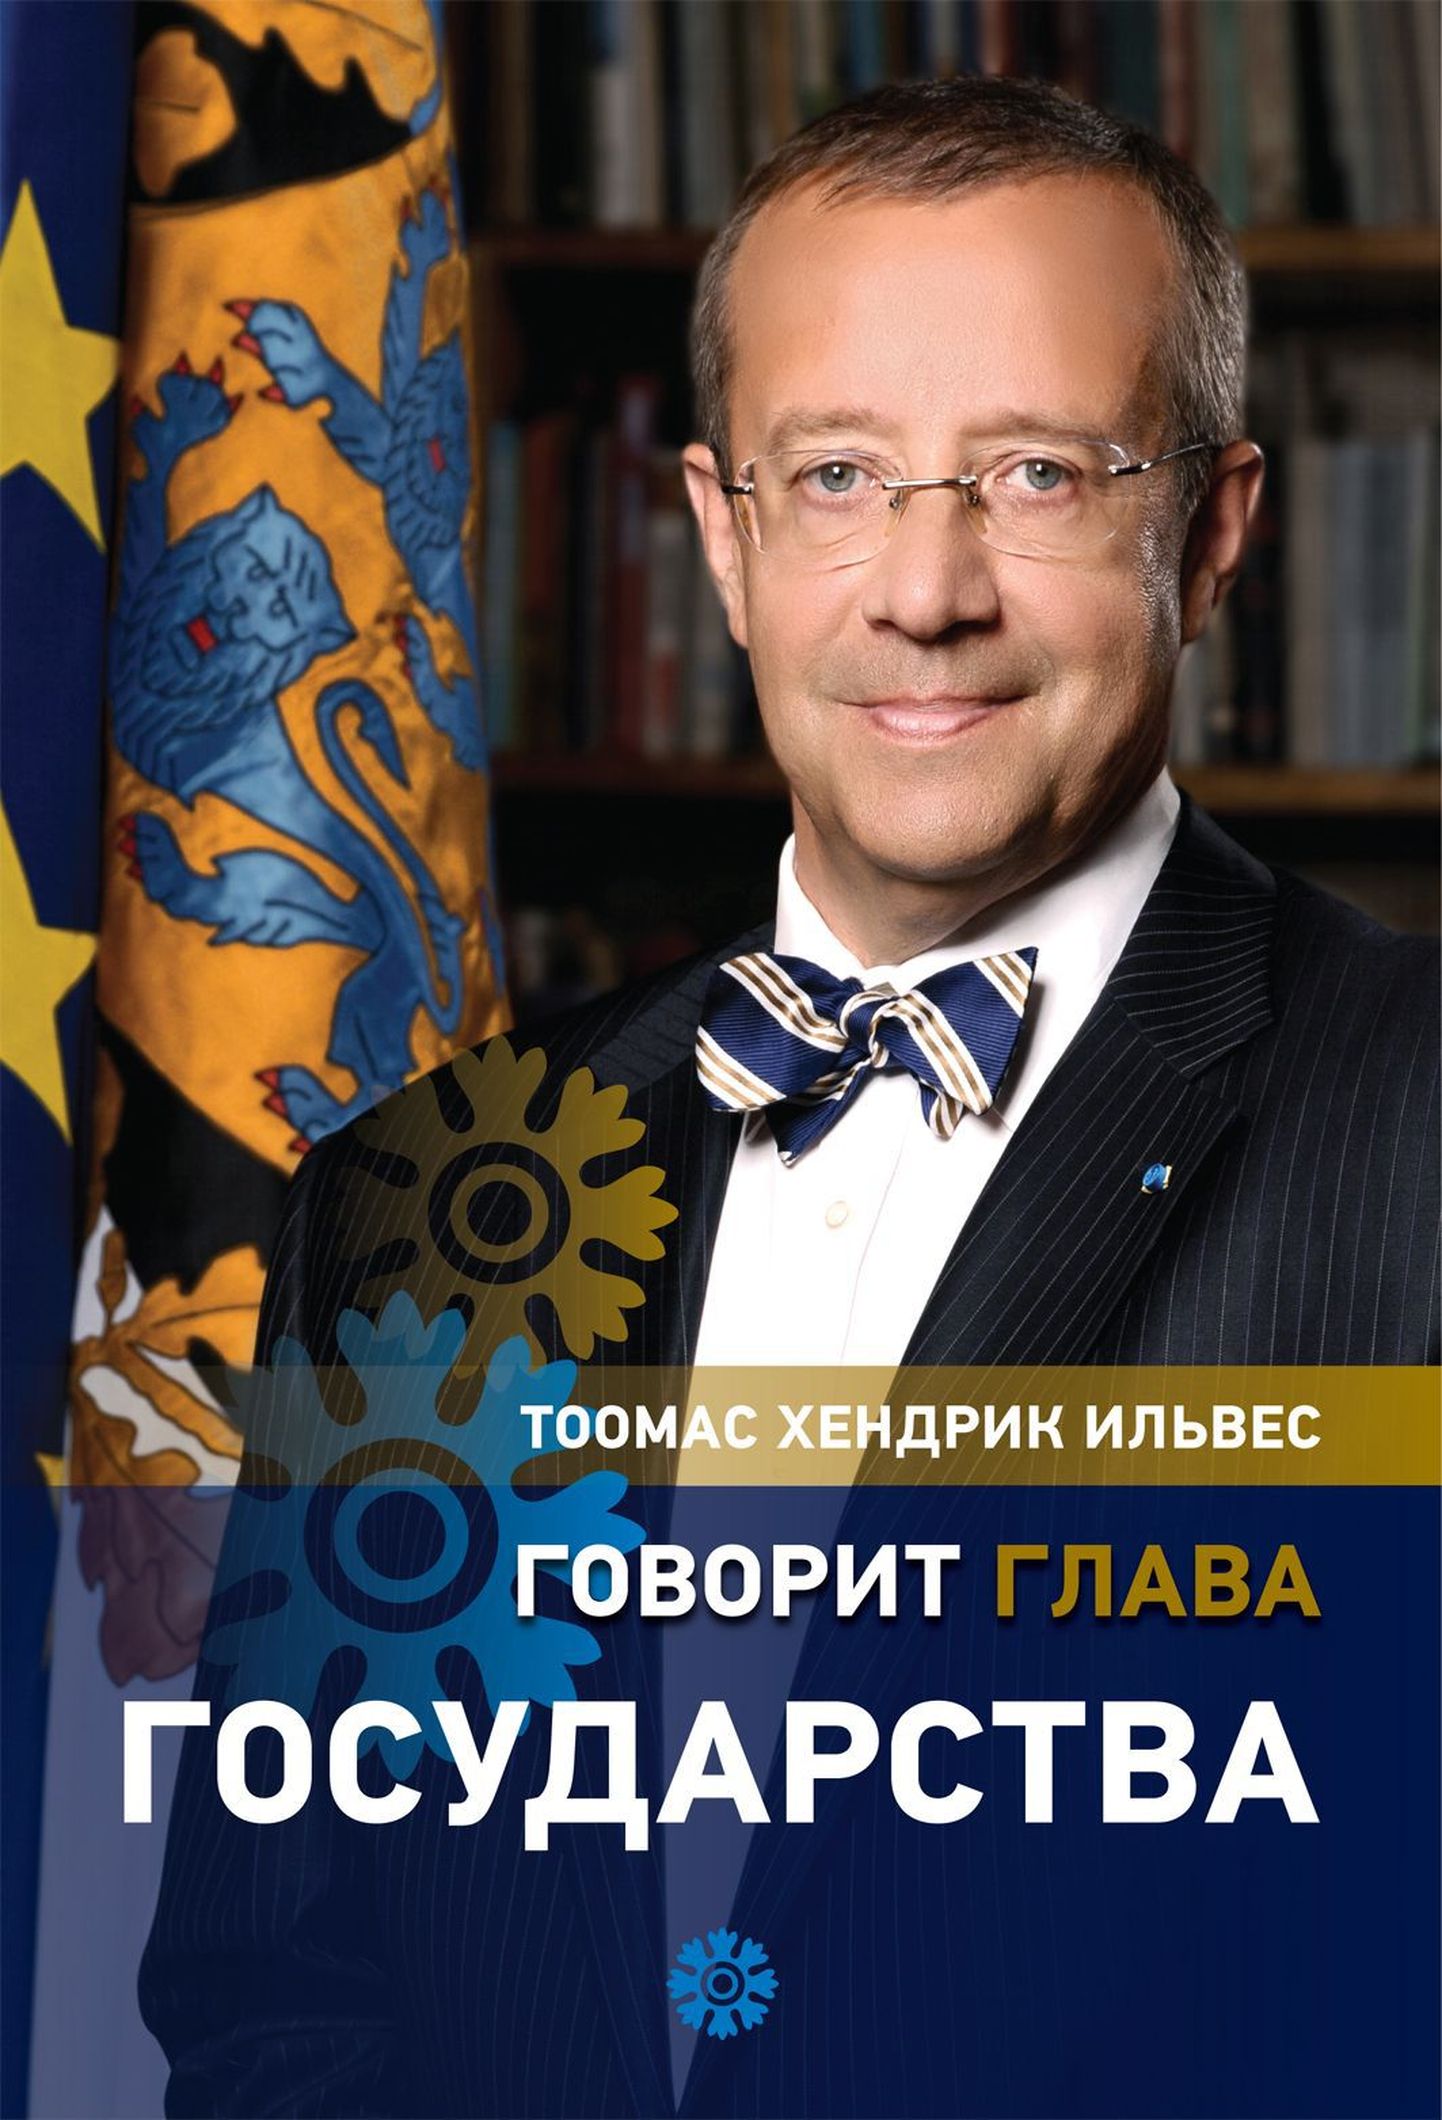 Тоомас Хендрик Ильвес представит книгу на русском языке «Говорит глава государства».